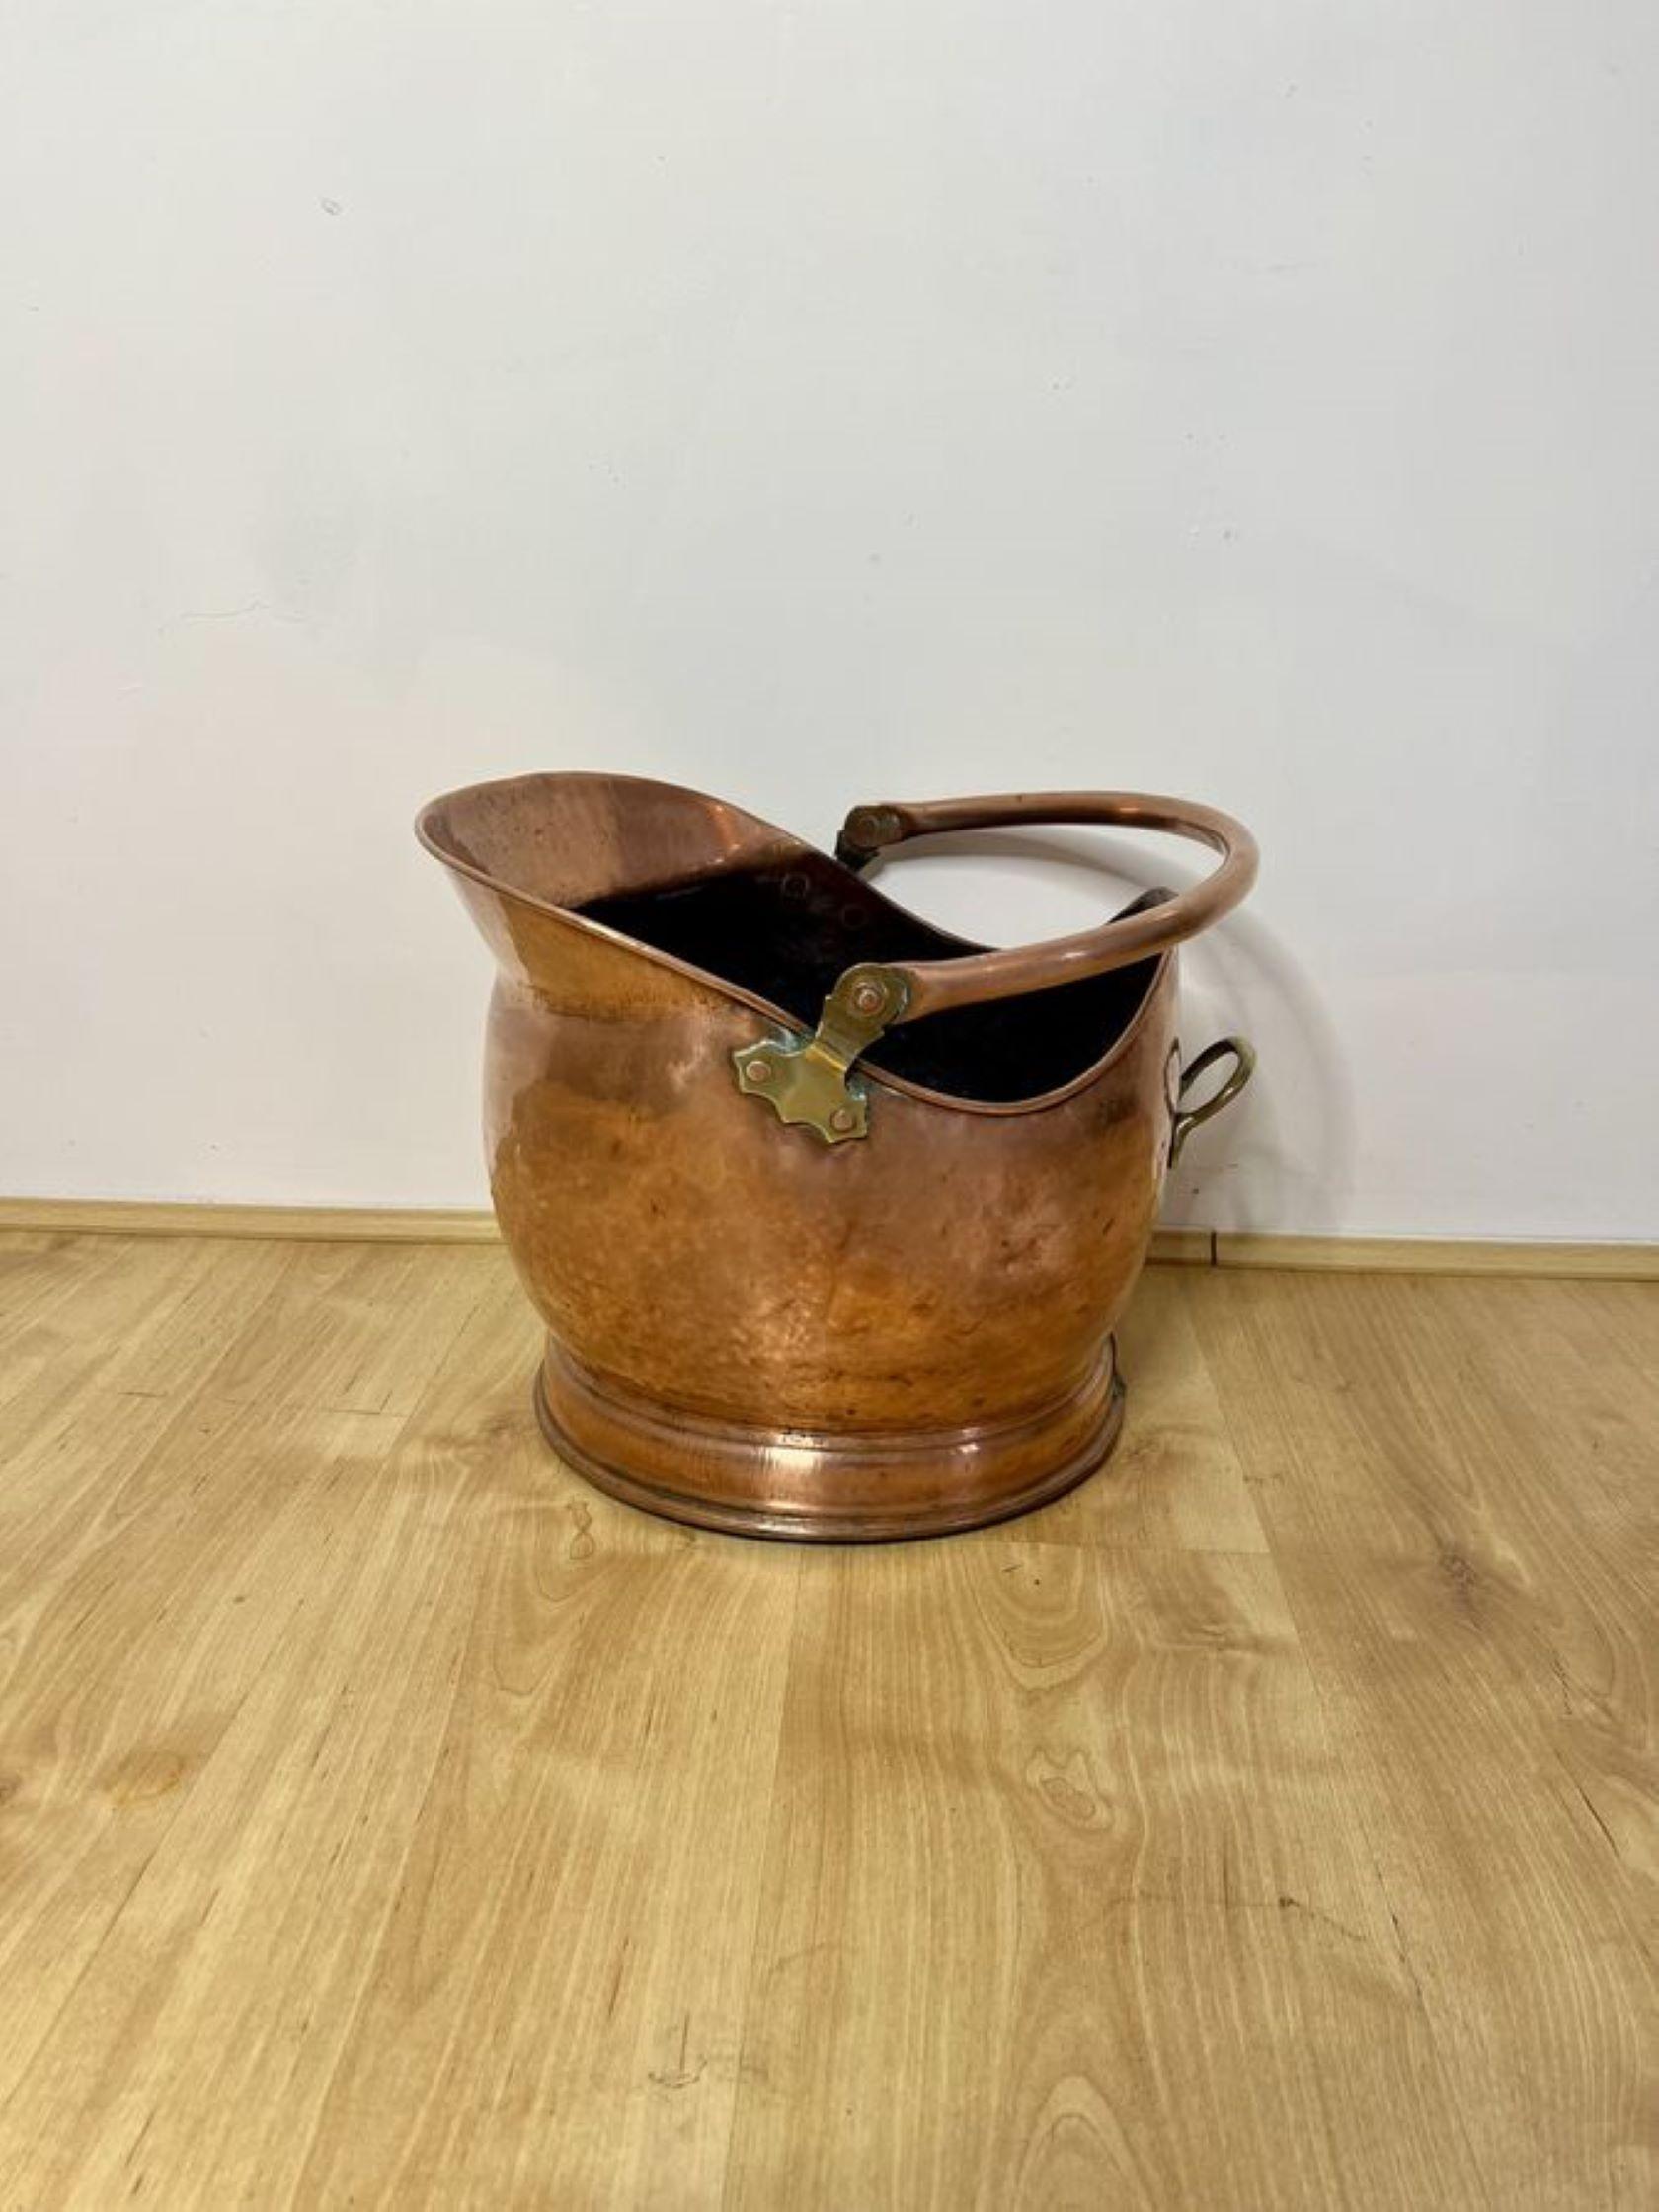 Qualität antiken viktorianischen Kupfer Helm Kohlenkasten mit einem Swing Tragegriff an der Spitze mit einem geformten Qualität Kupfer Helm Kohlenkasten und einem Messinggriff auf der Rückseite.

D. 1880